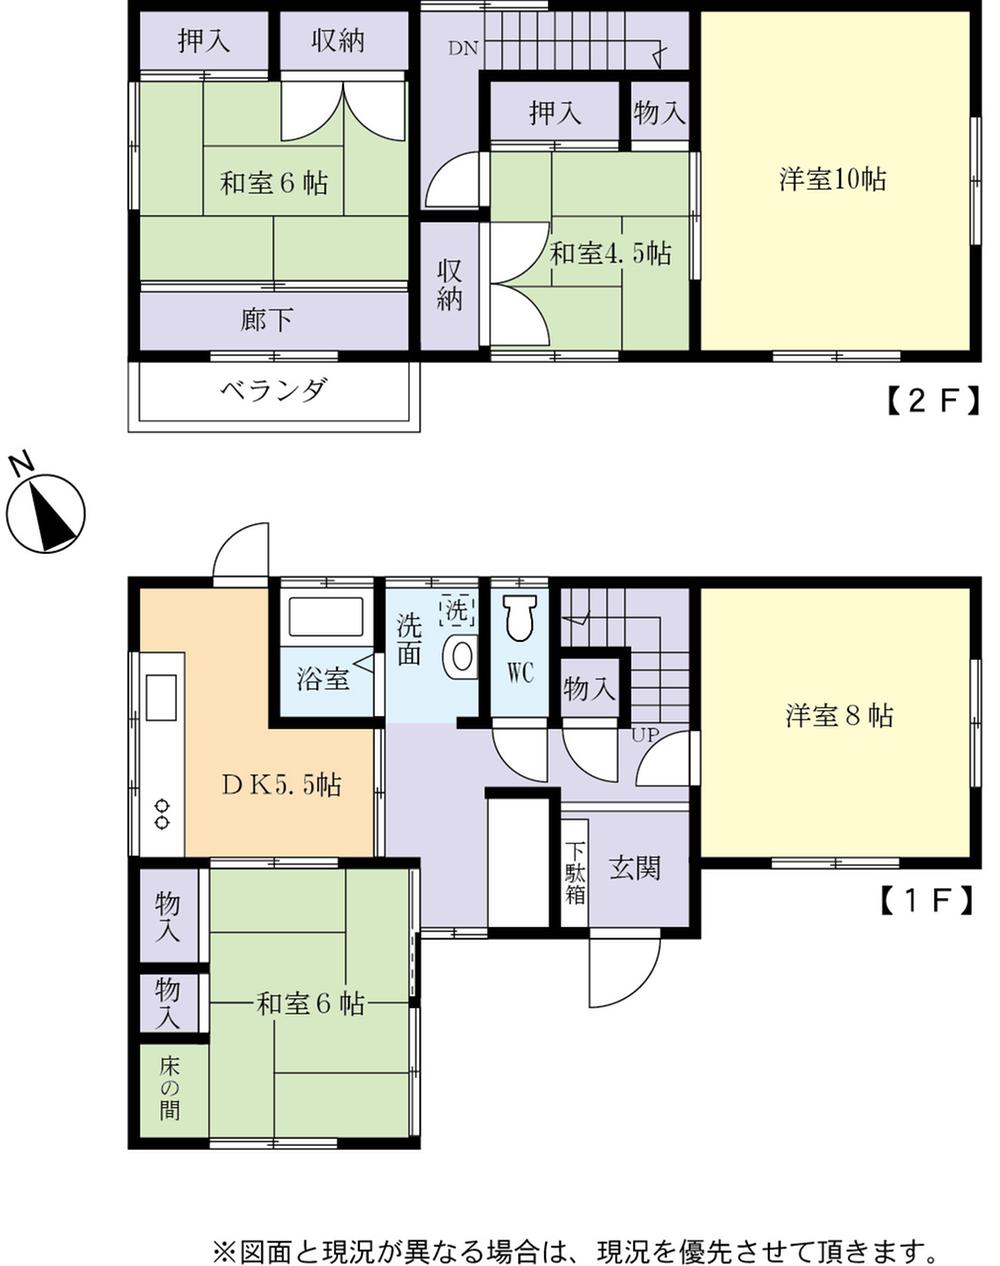 Floor plan. 7.8 million yen, 5DK, Land area 211 sq m , Building area 89.43 sq m